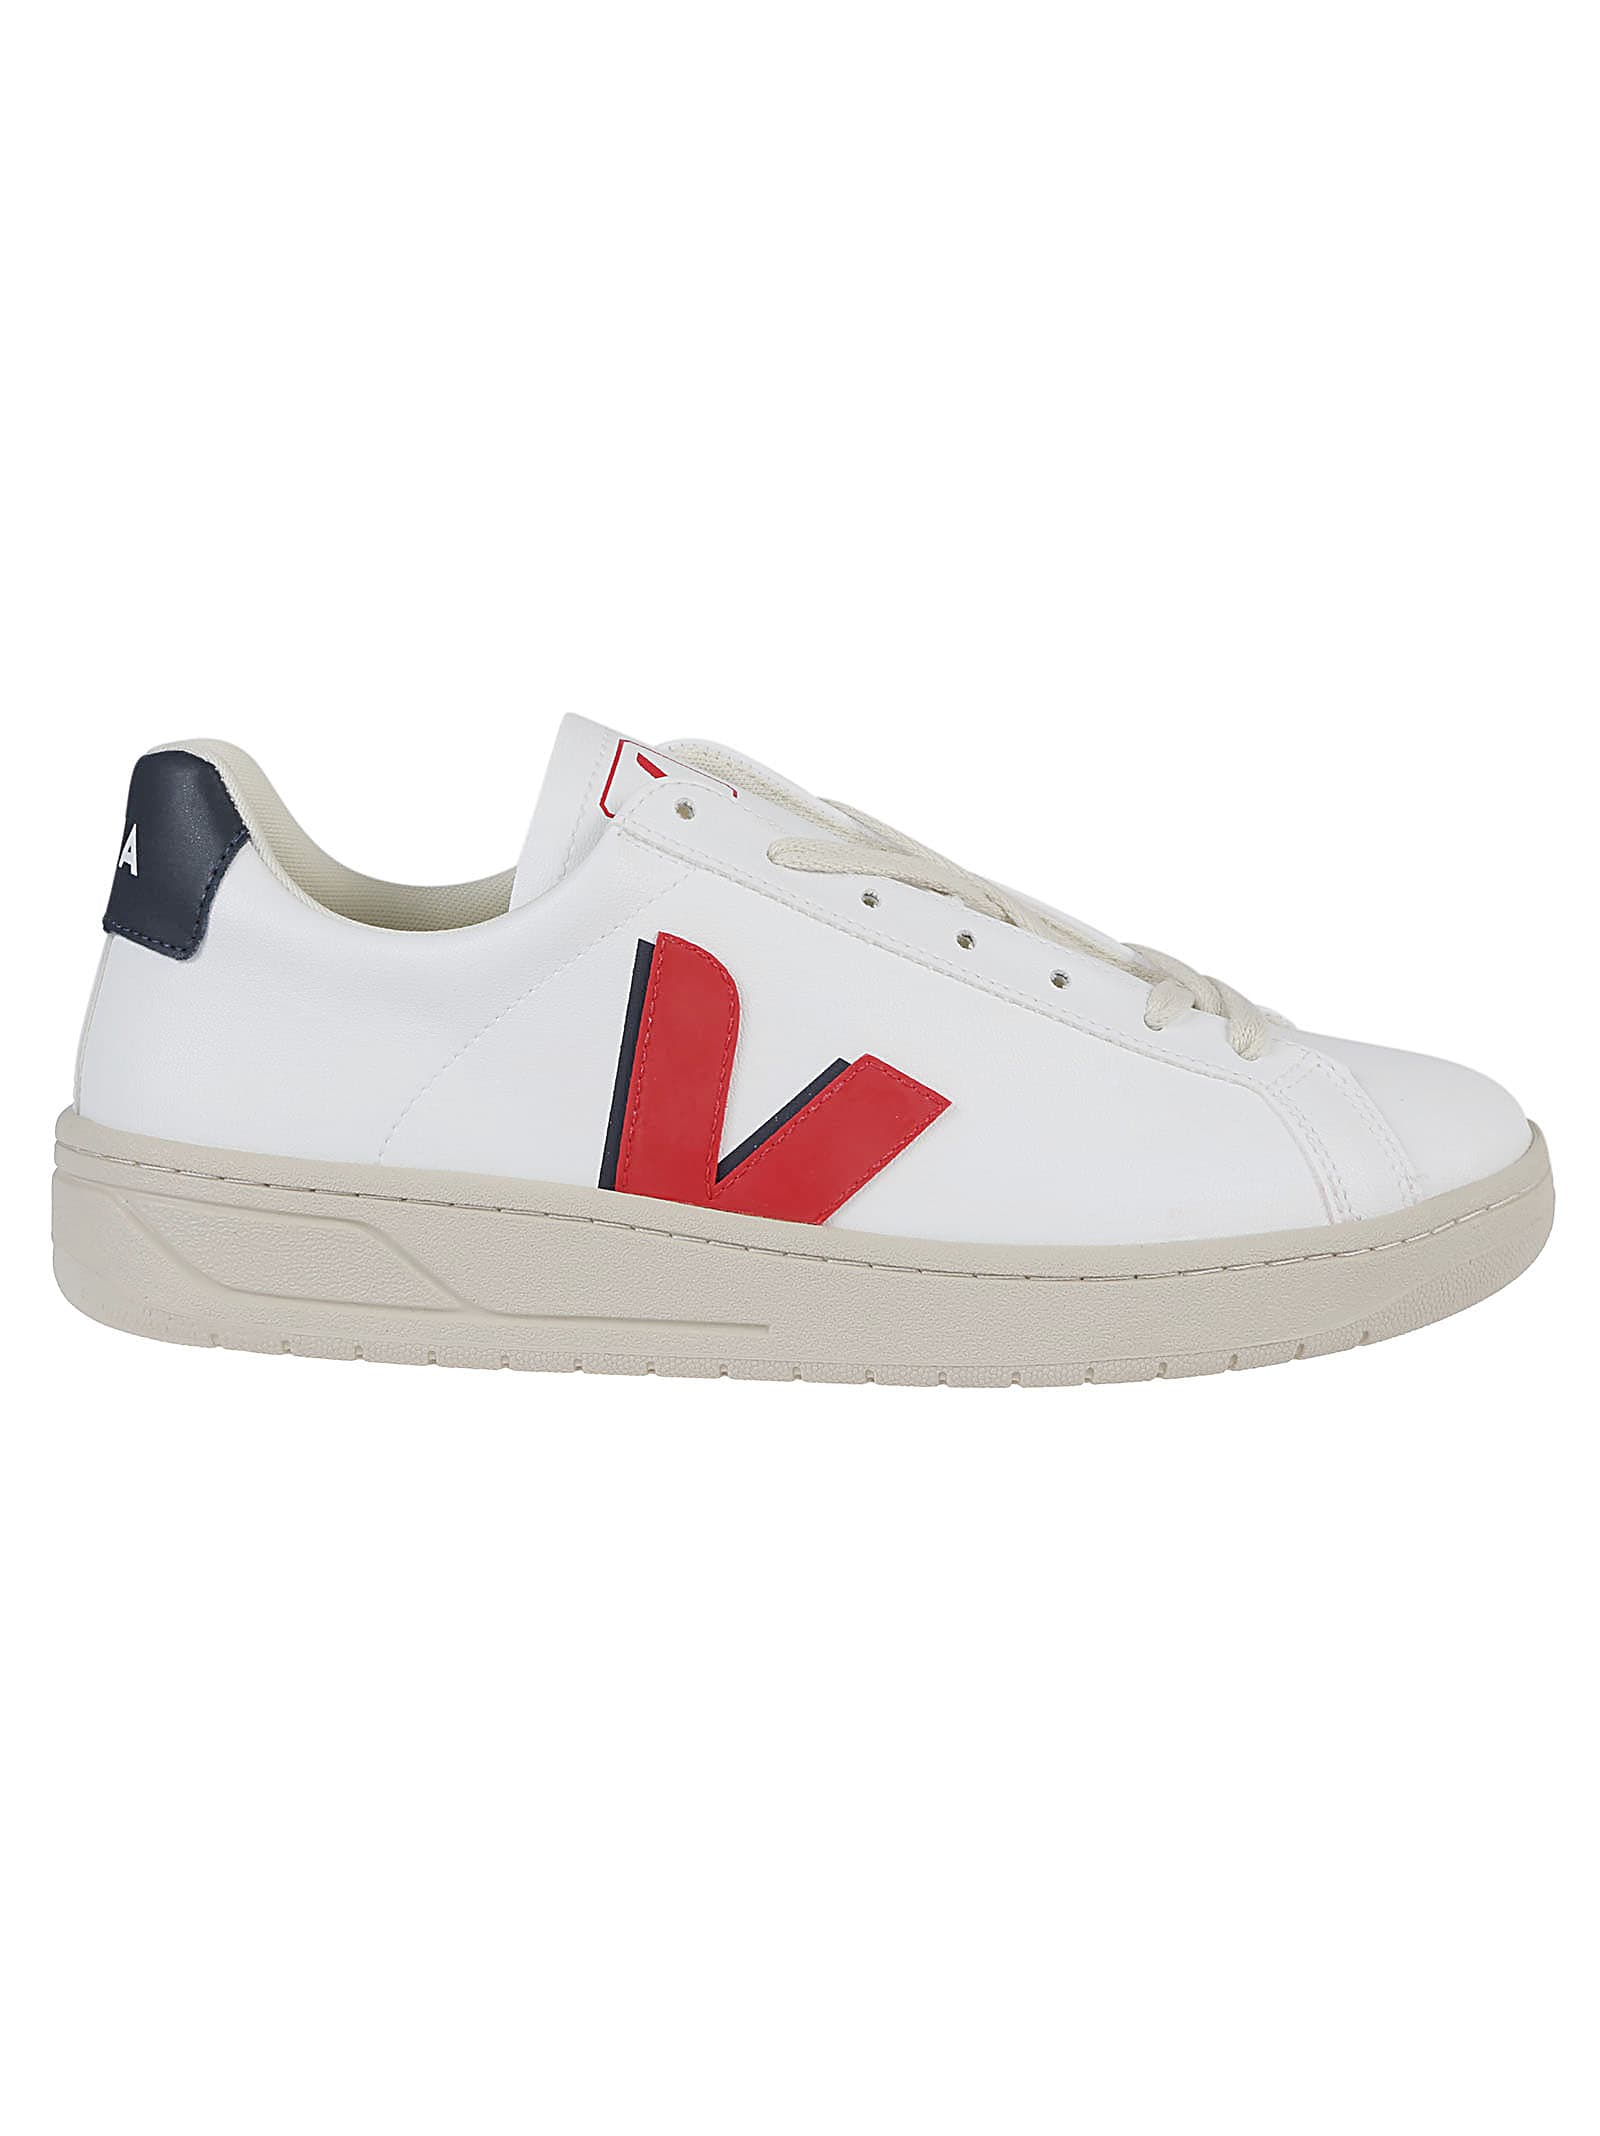 Veja Urca Sneakers In White/pekin/nautico